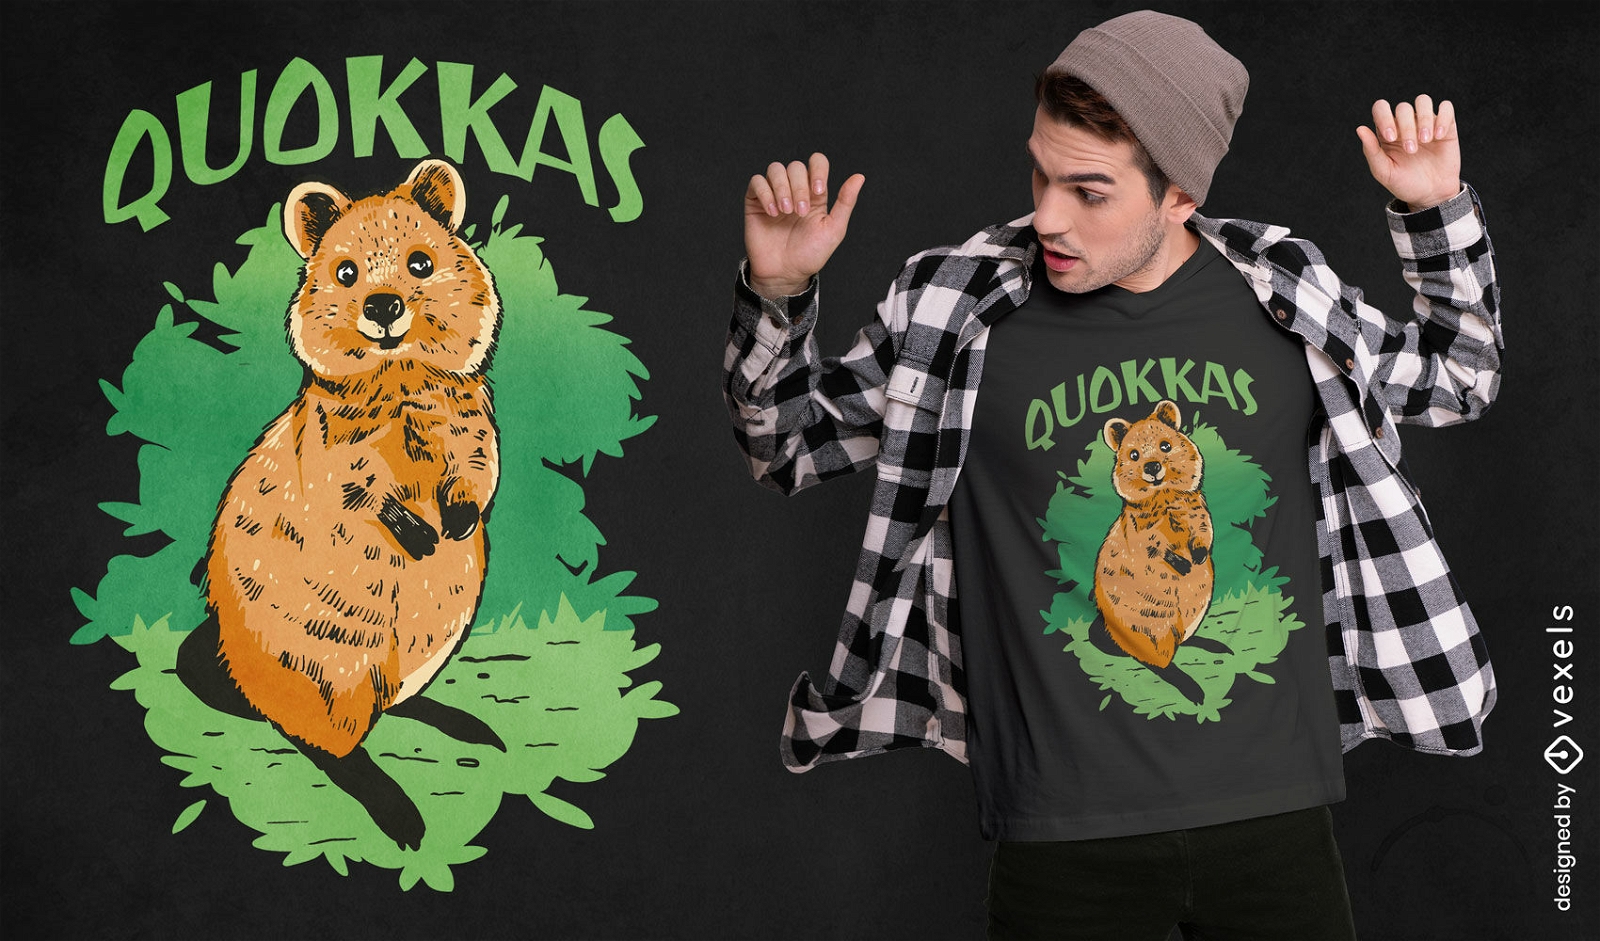 Quokka australisches Tierniedliches T-Shirt Design